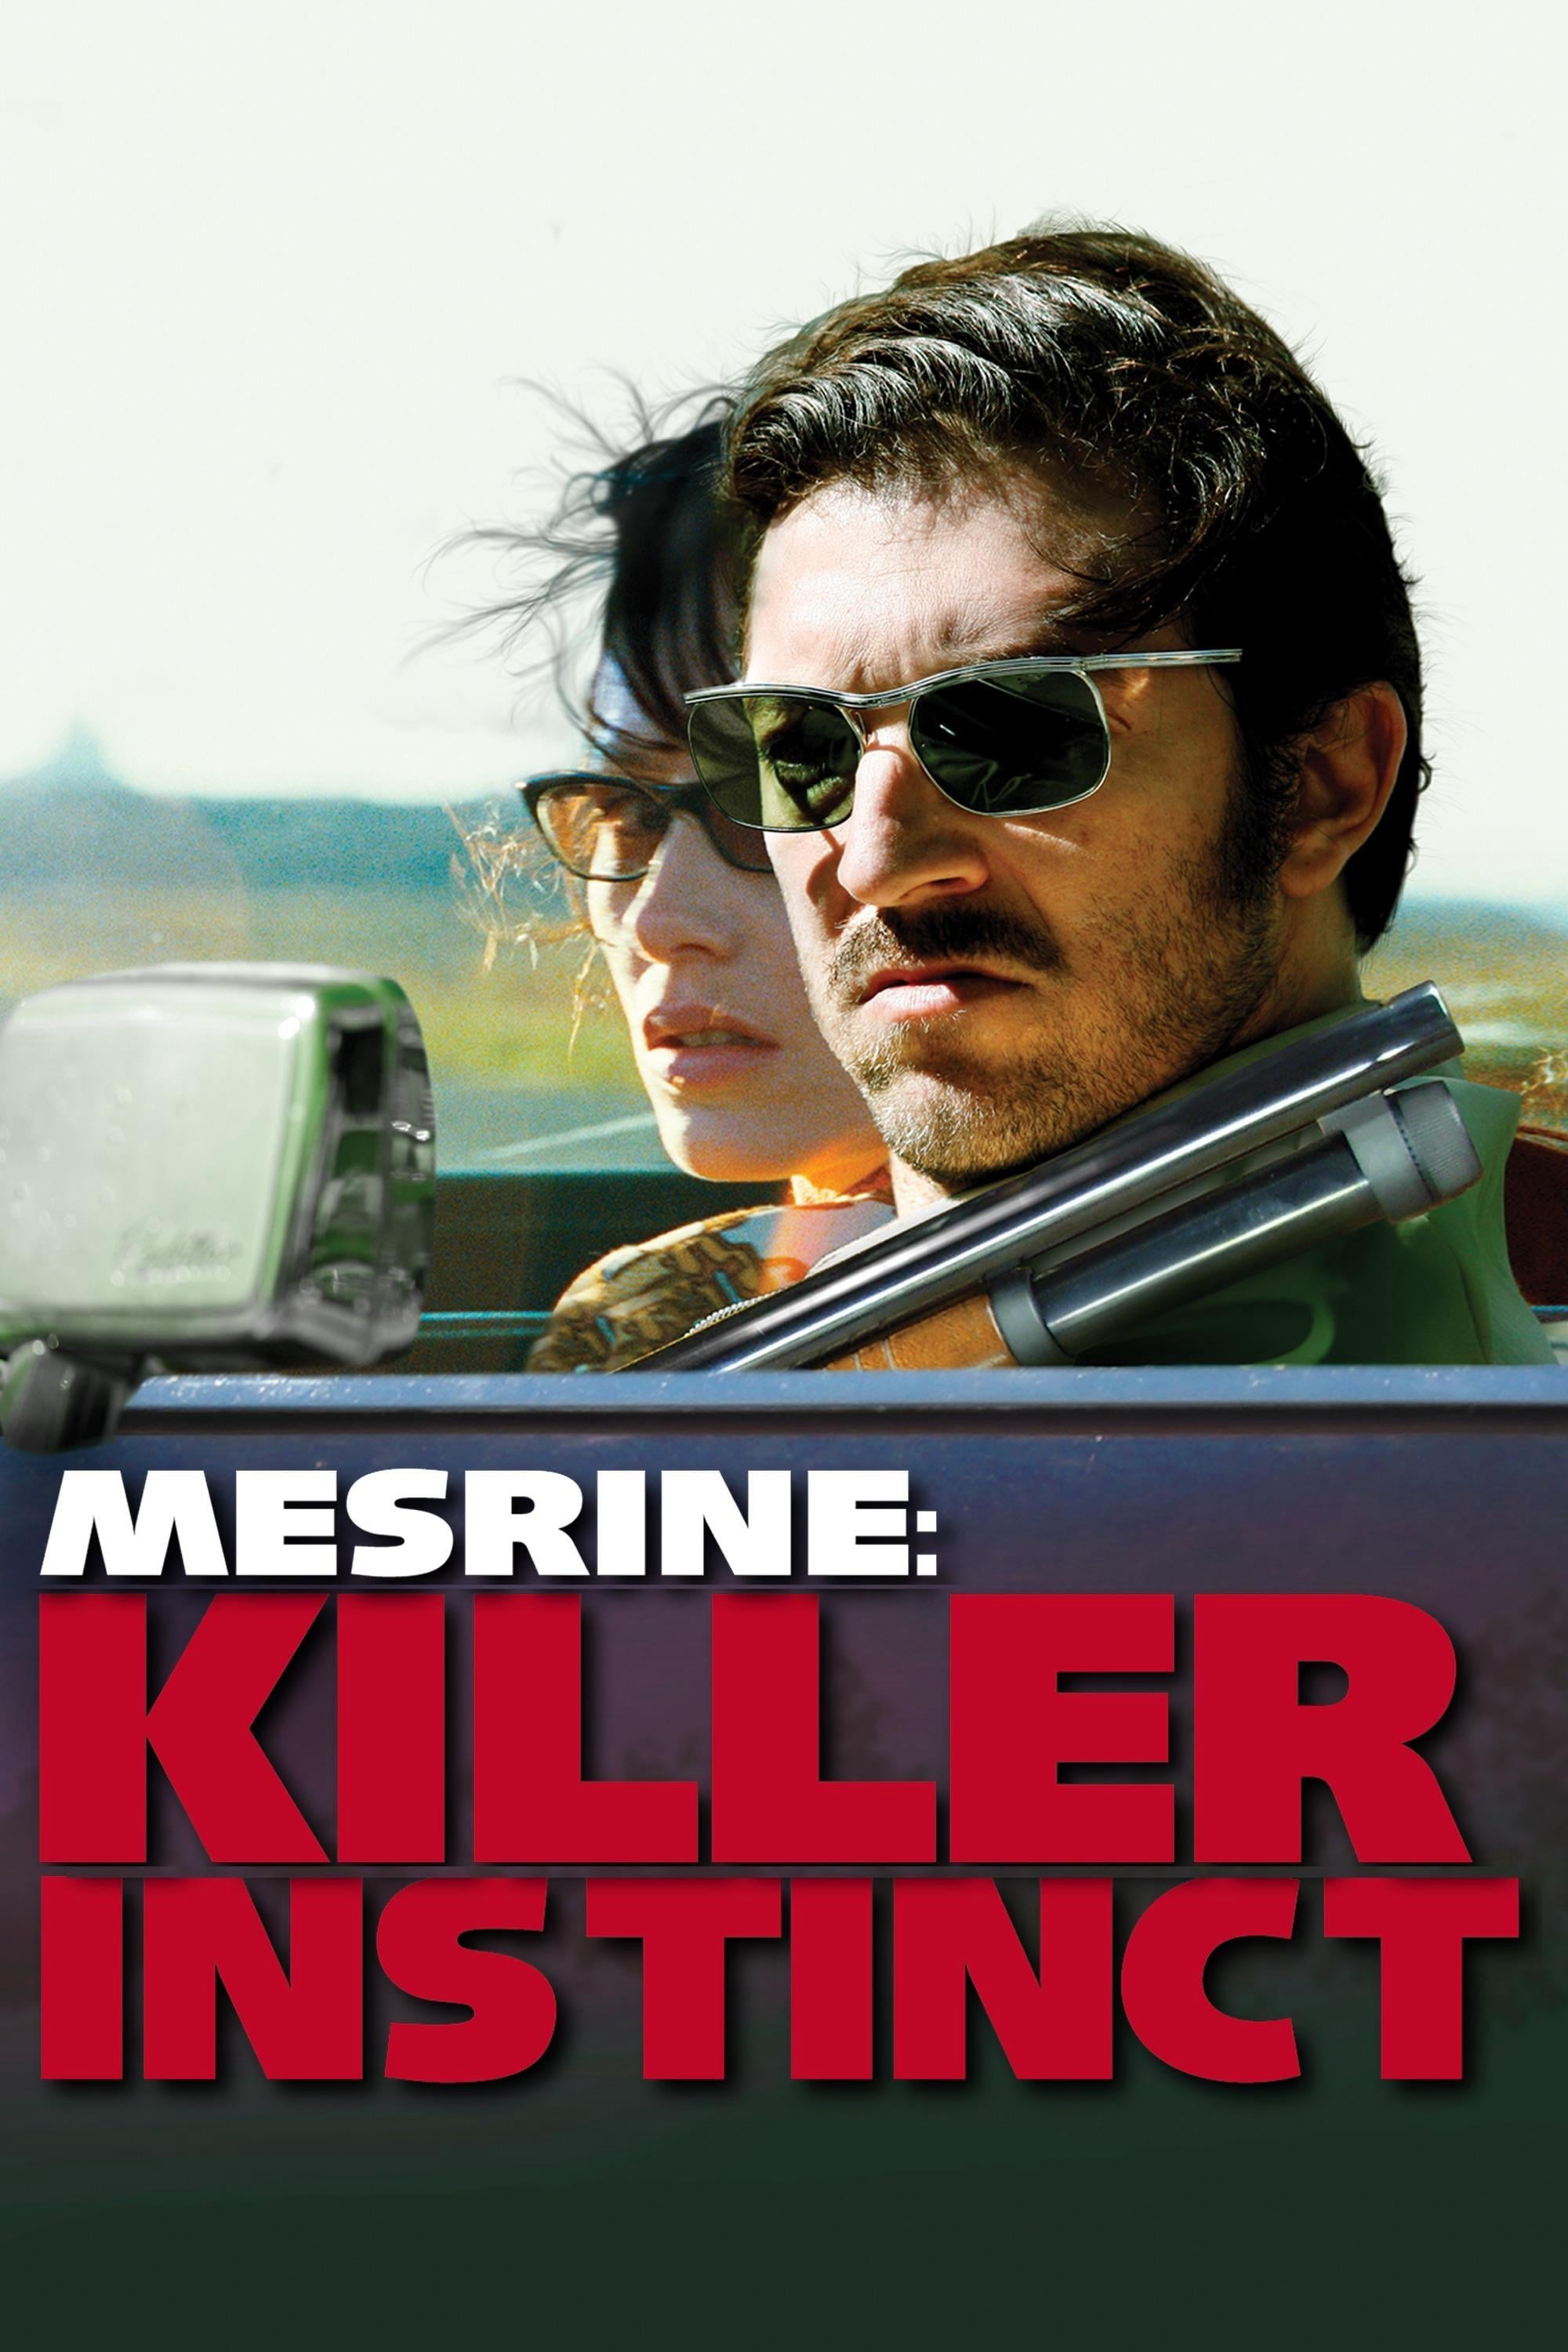 Poster Phim Mesrine: Killer Instinct (Mesrine: Killer Instinct)